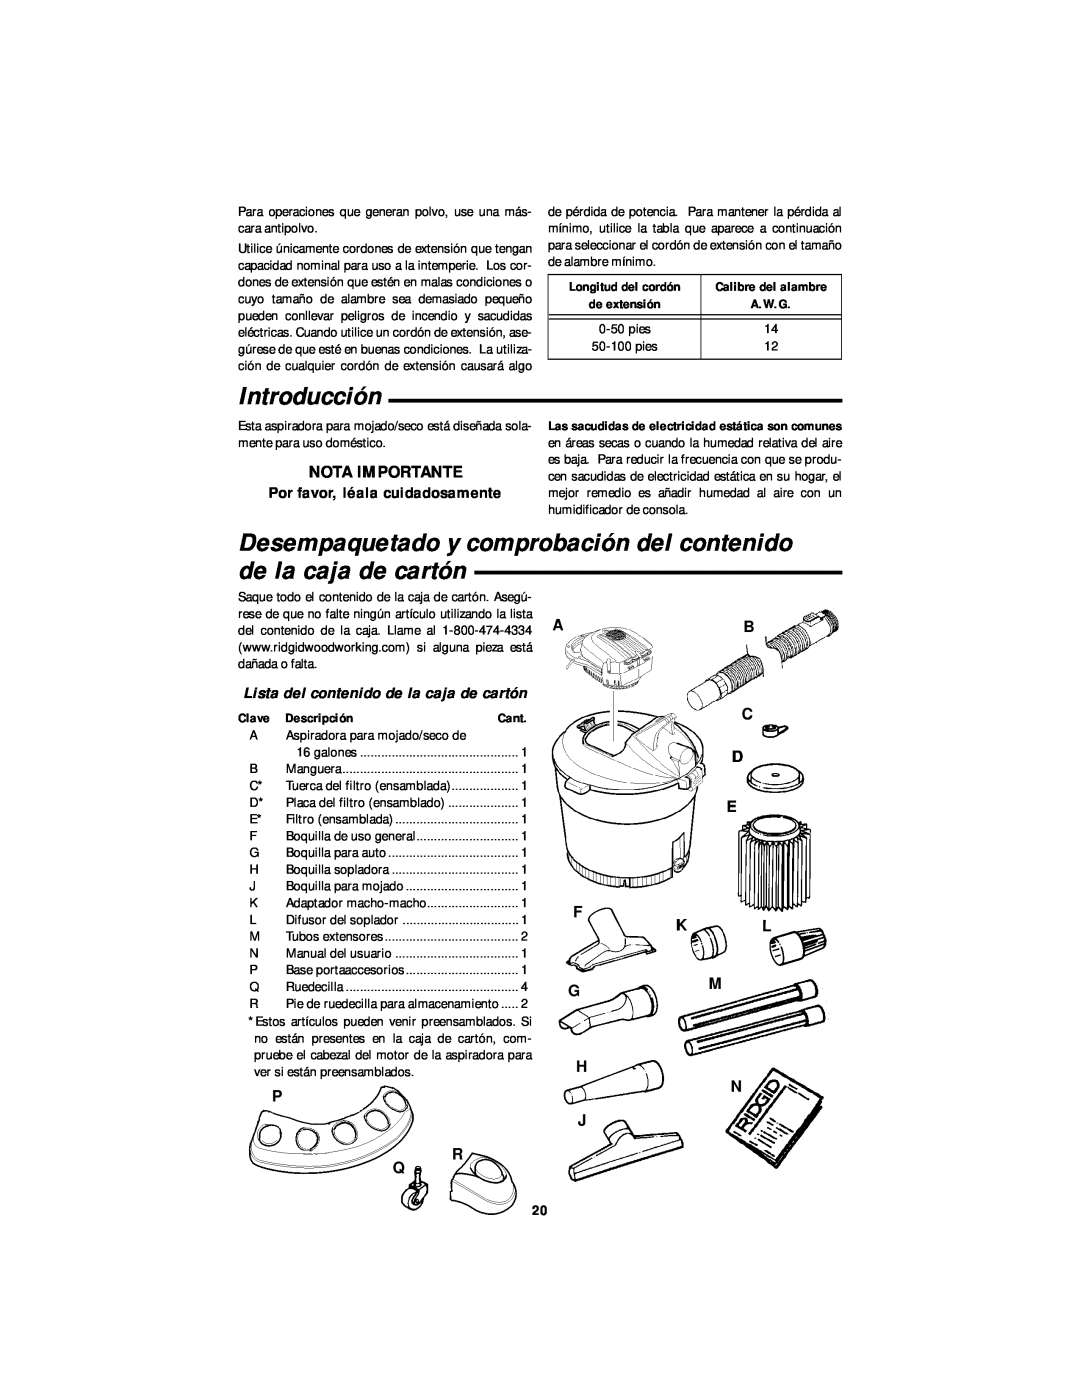 RIDGID WD1665 manual Introducción, Desempaquetado y comprobación del contenido de la caja de cartón, Nota Importante, Clave 